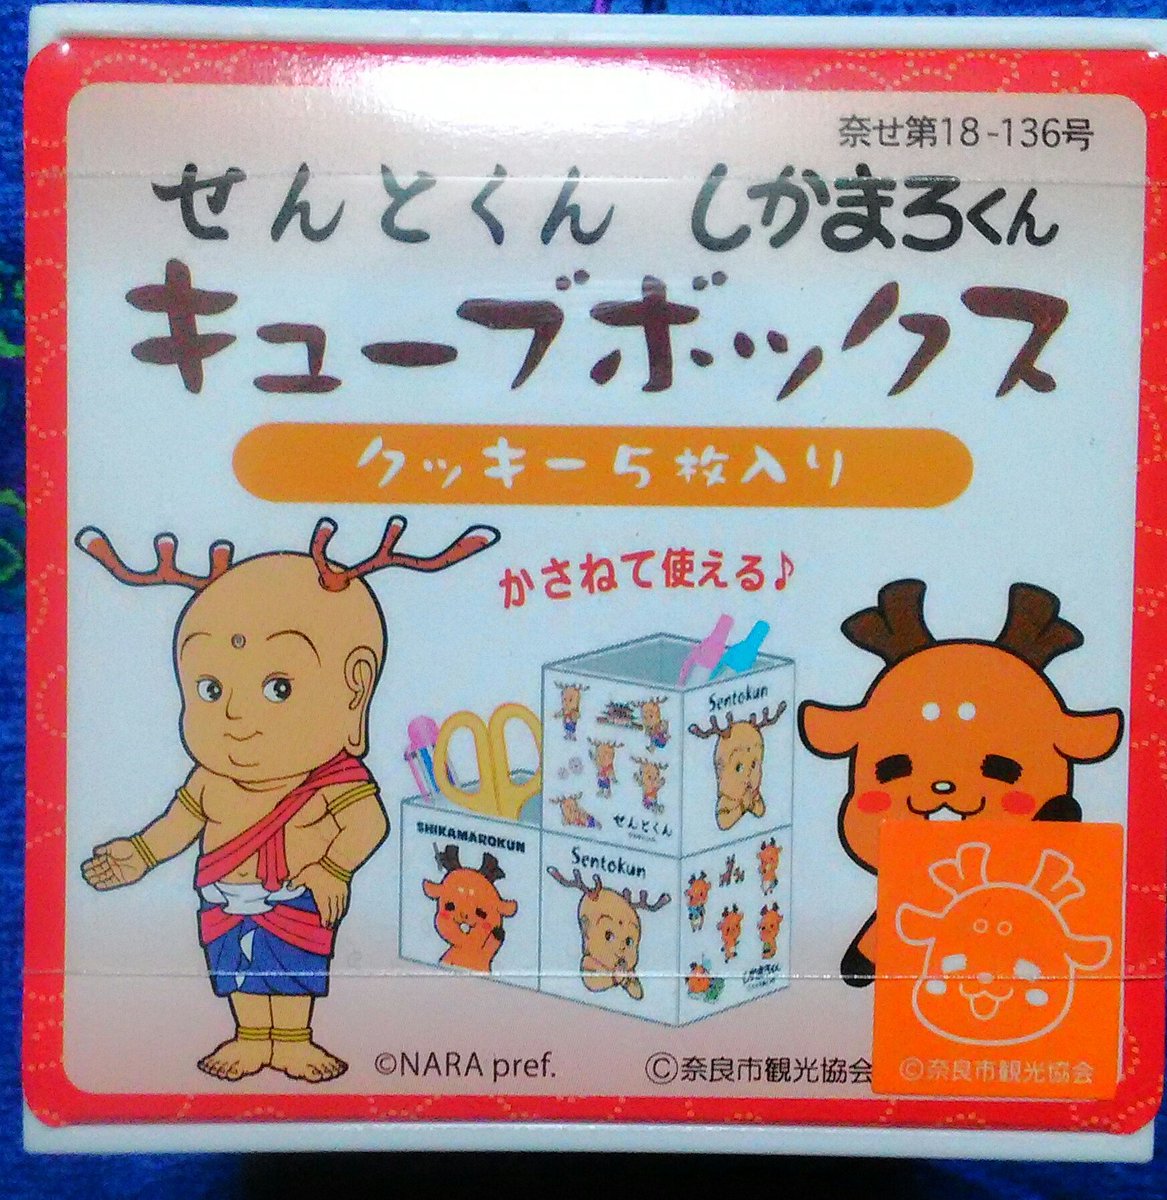 ミルク 久しぶりに奈良のならまちに来たので ひがしむき商店街にある福泉堂 Fukusendo Nara さんで しかまろくんグッズを購入 せんとくん しかまろくんキューブボックス クッキー5枚入り 側面にキャラのイラストがあり 小物入れになります せんとくん